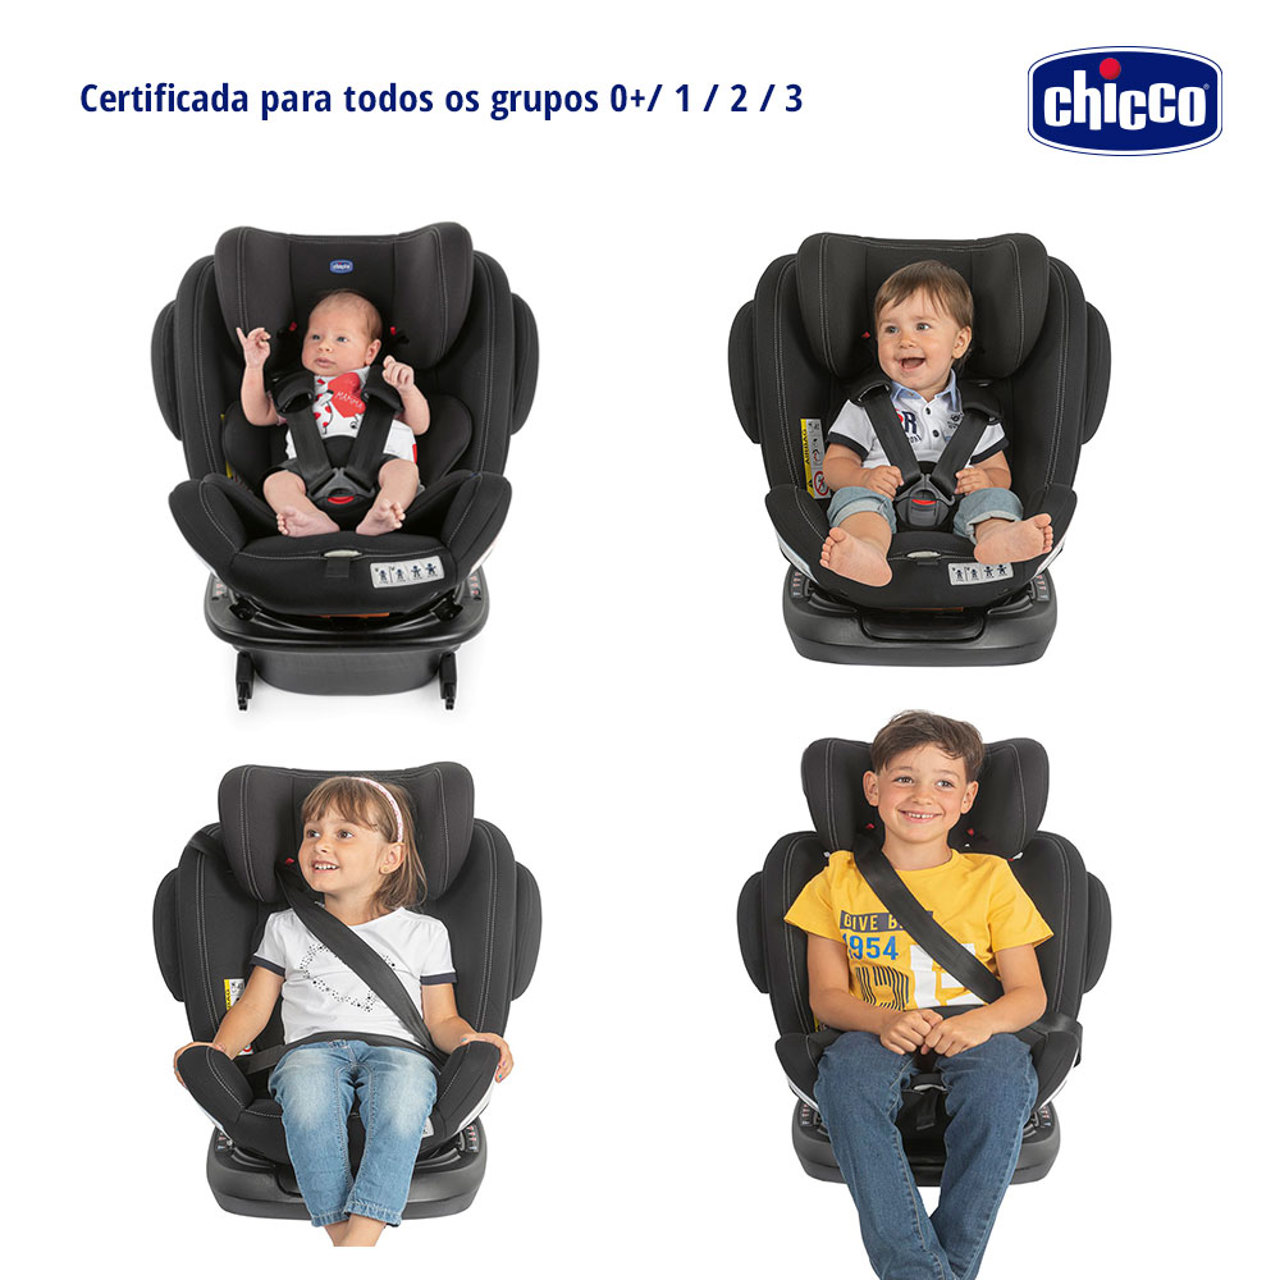 Cadeirinha Chico - Artigos infantis - Brás, São Paulo 1290220558